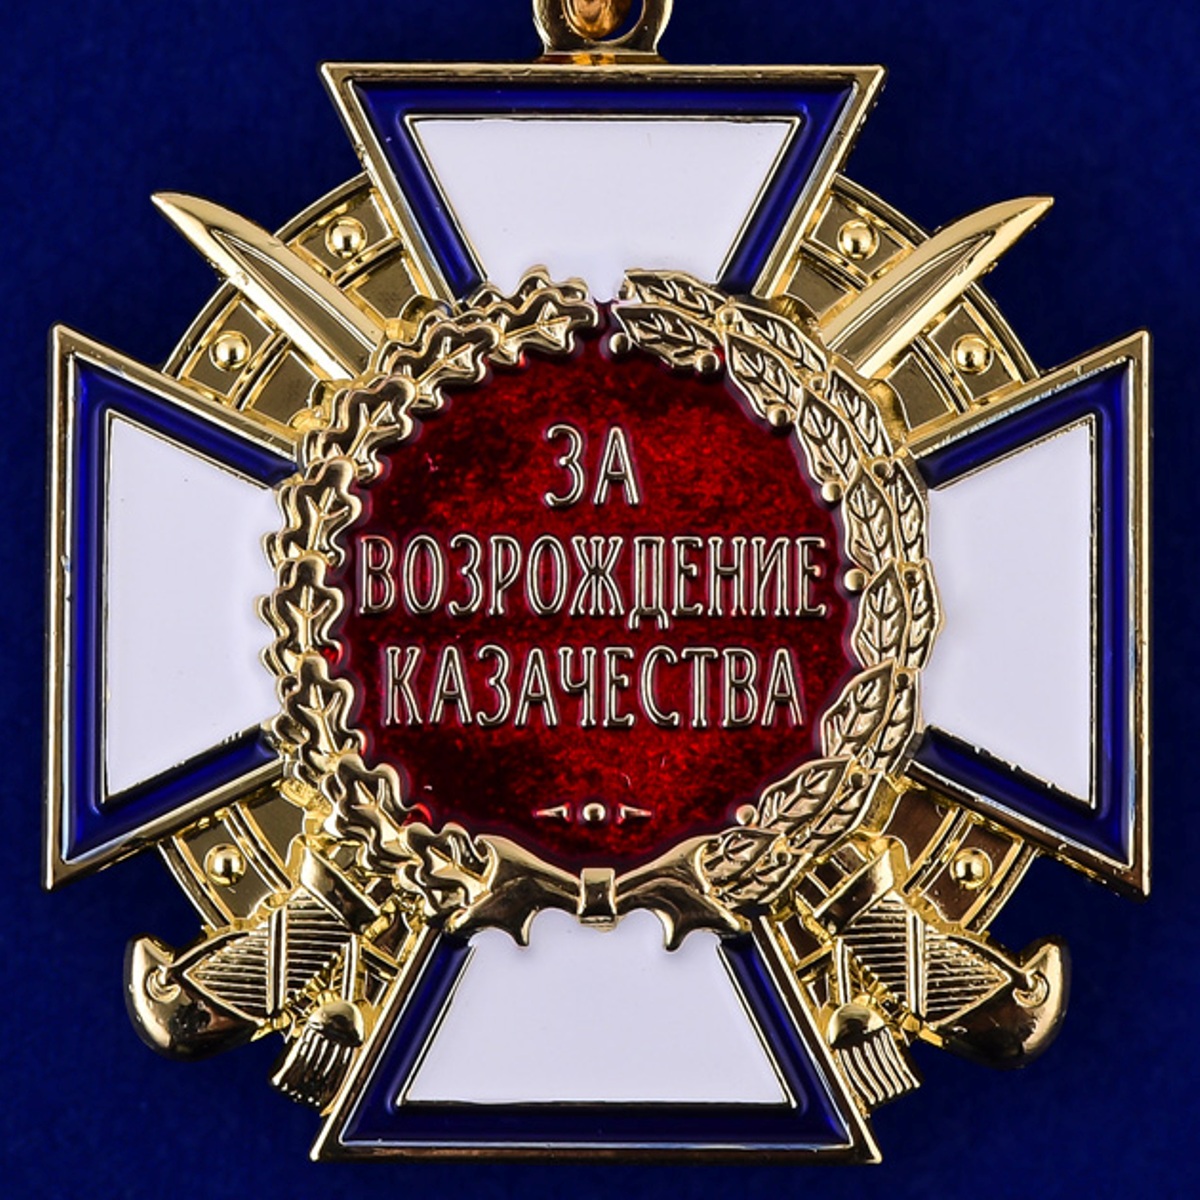 Медаль "За возрождение казачества" (1 степень) 